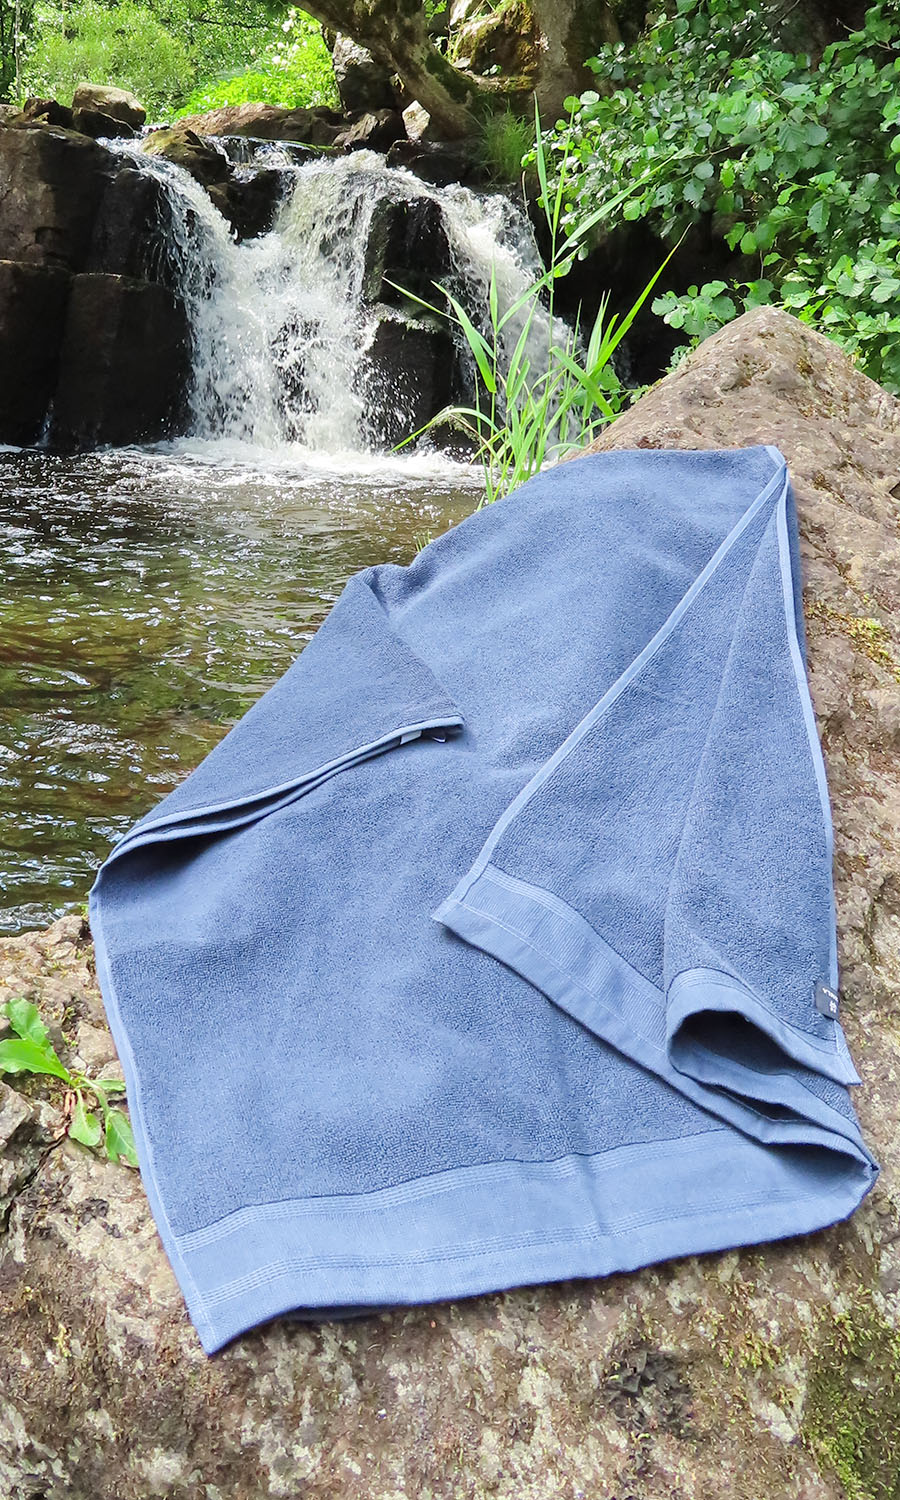 Lina handduk från Himla vid vattenfall